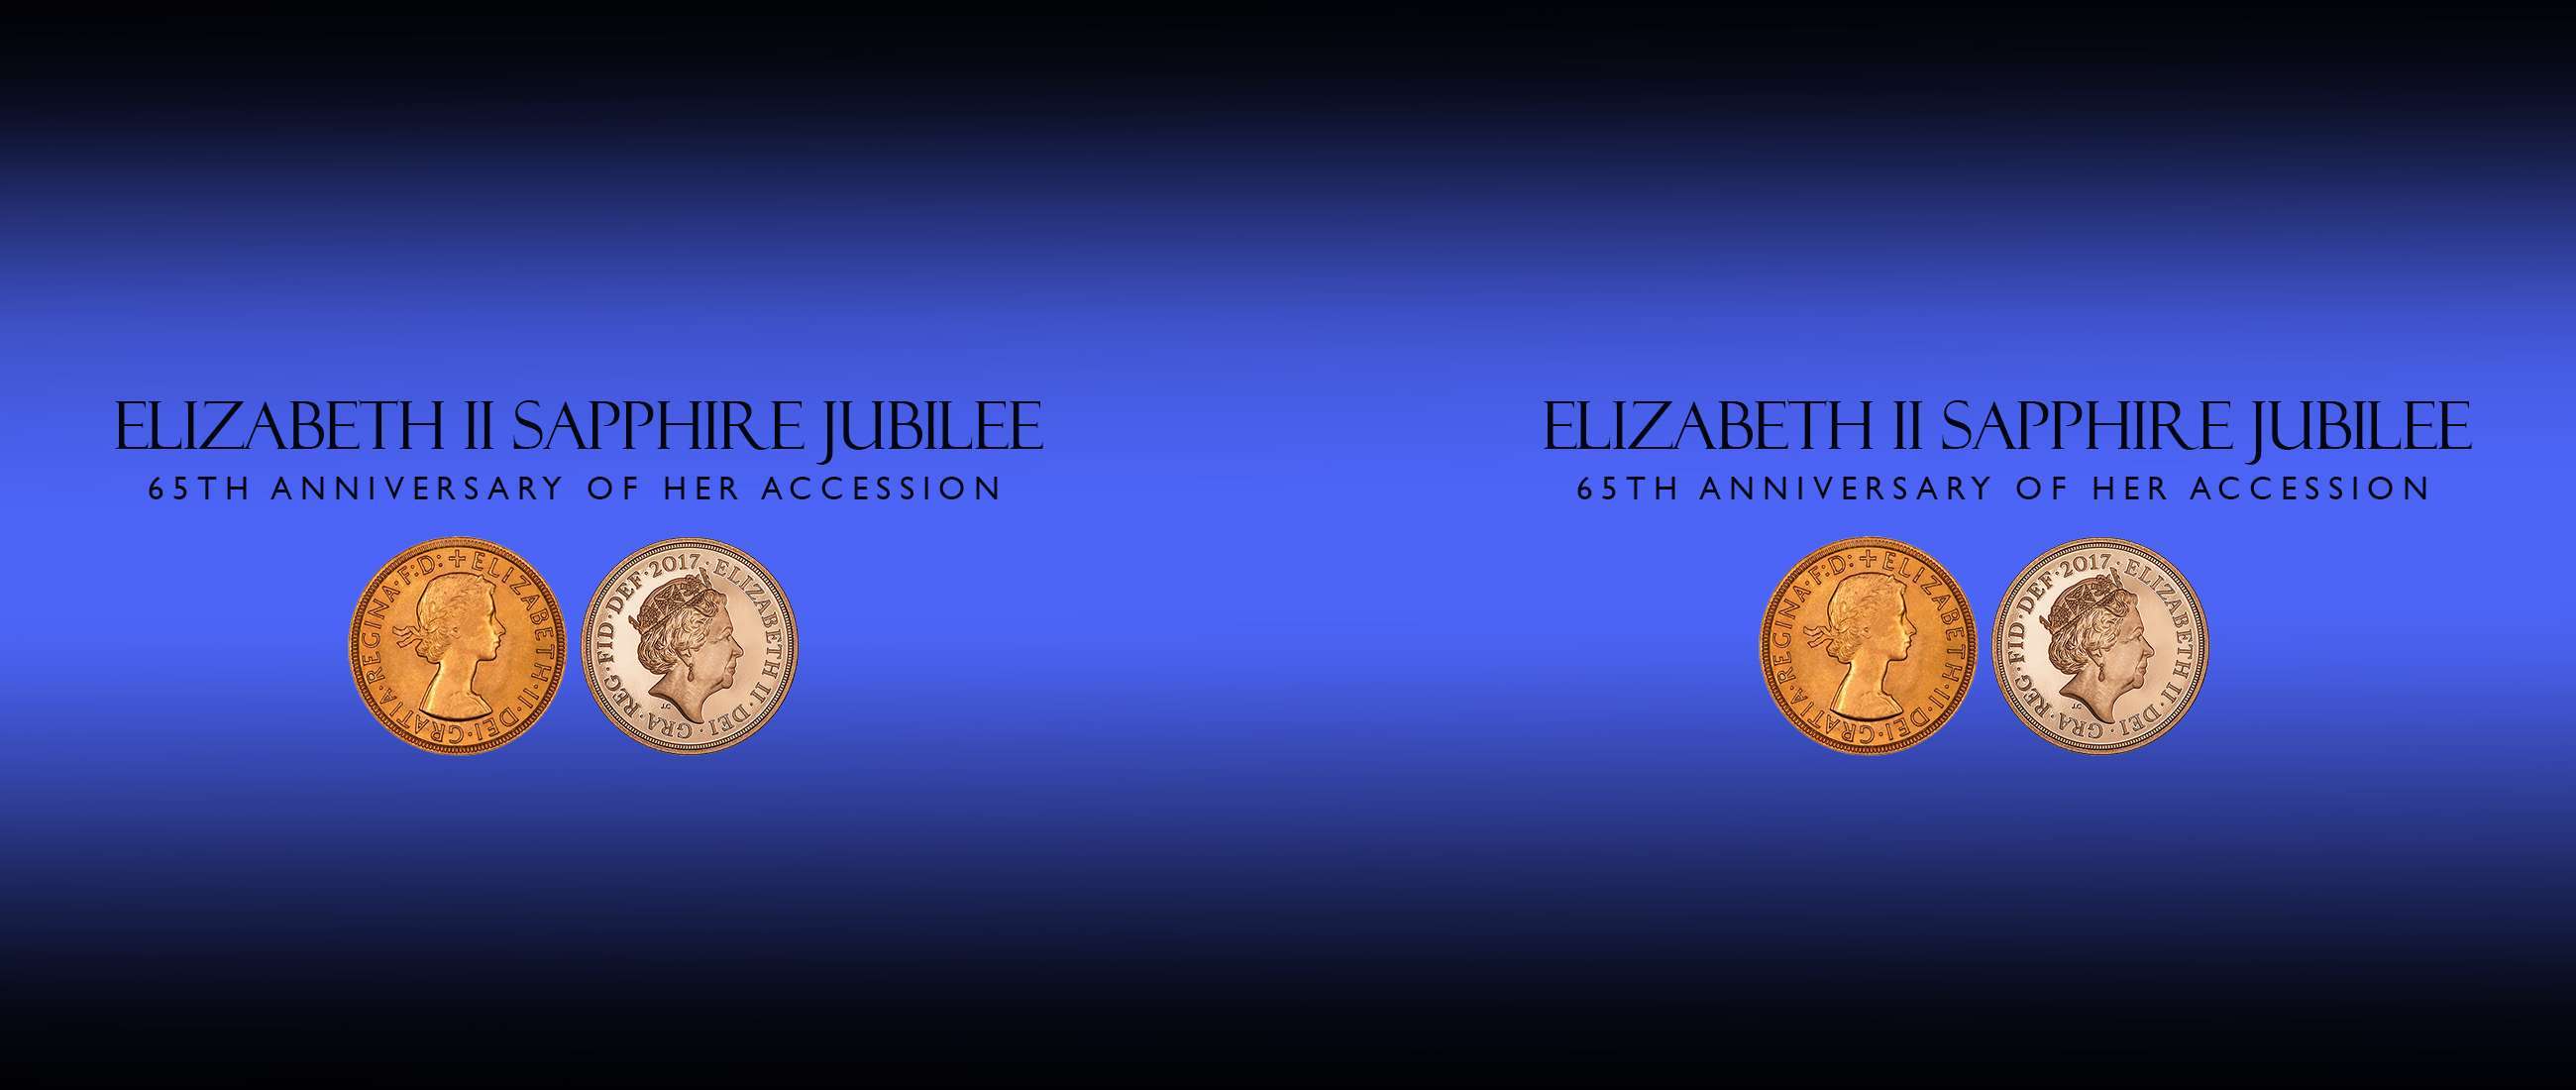 Elizabeth II Sapphire Jubilee 122